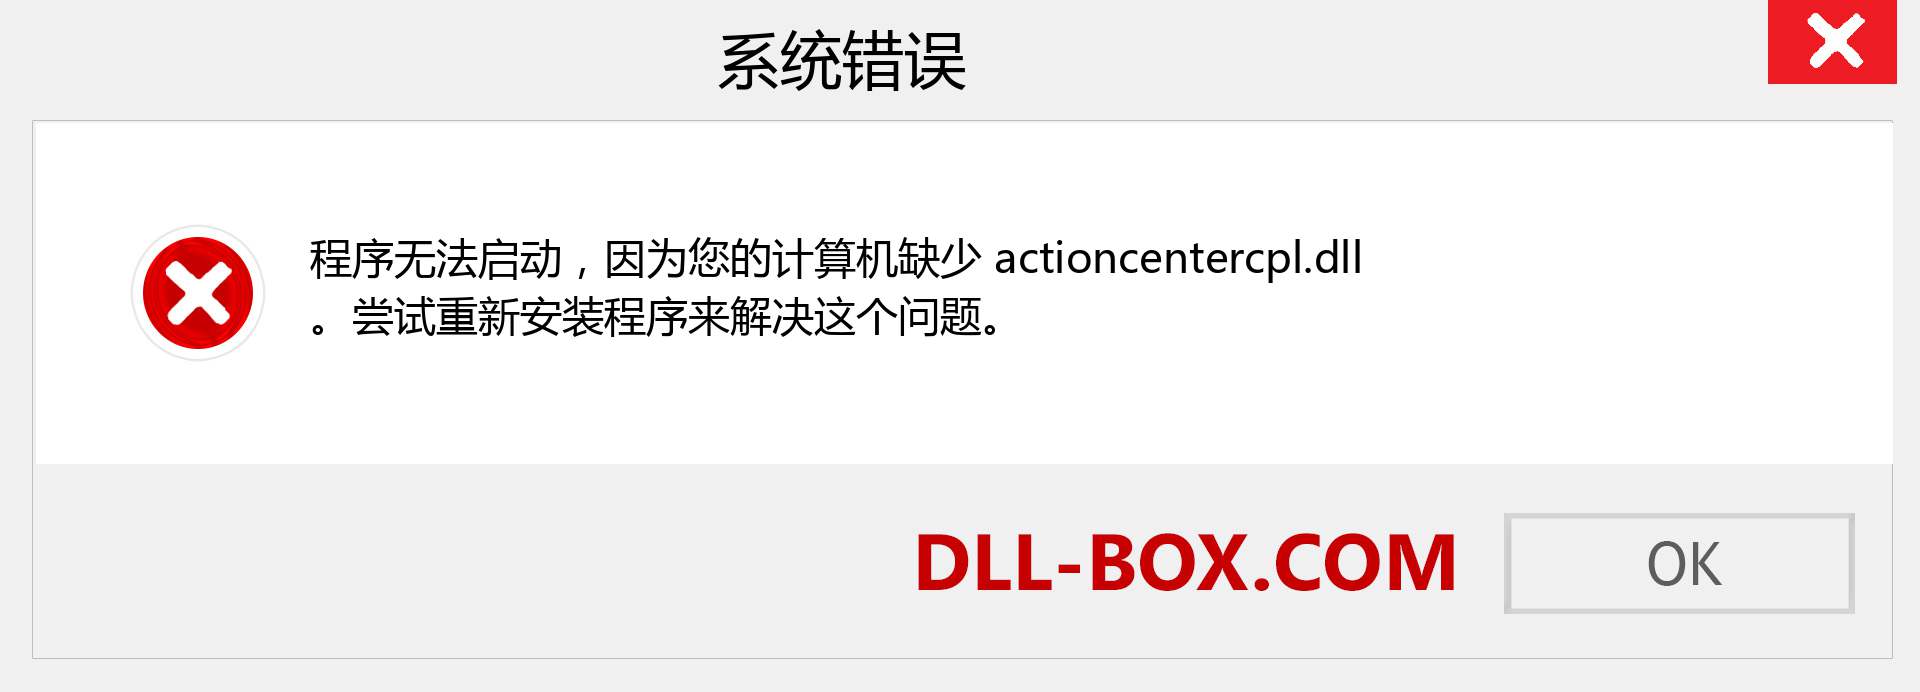 actioncentercpl.dll 文件丢失？。 适用于 Windows 7、8、10 的下载 - 修复 Windows、照片、图像上的 actioncentercpl dll 丢失错误